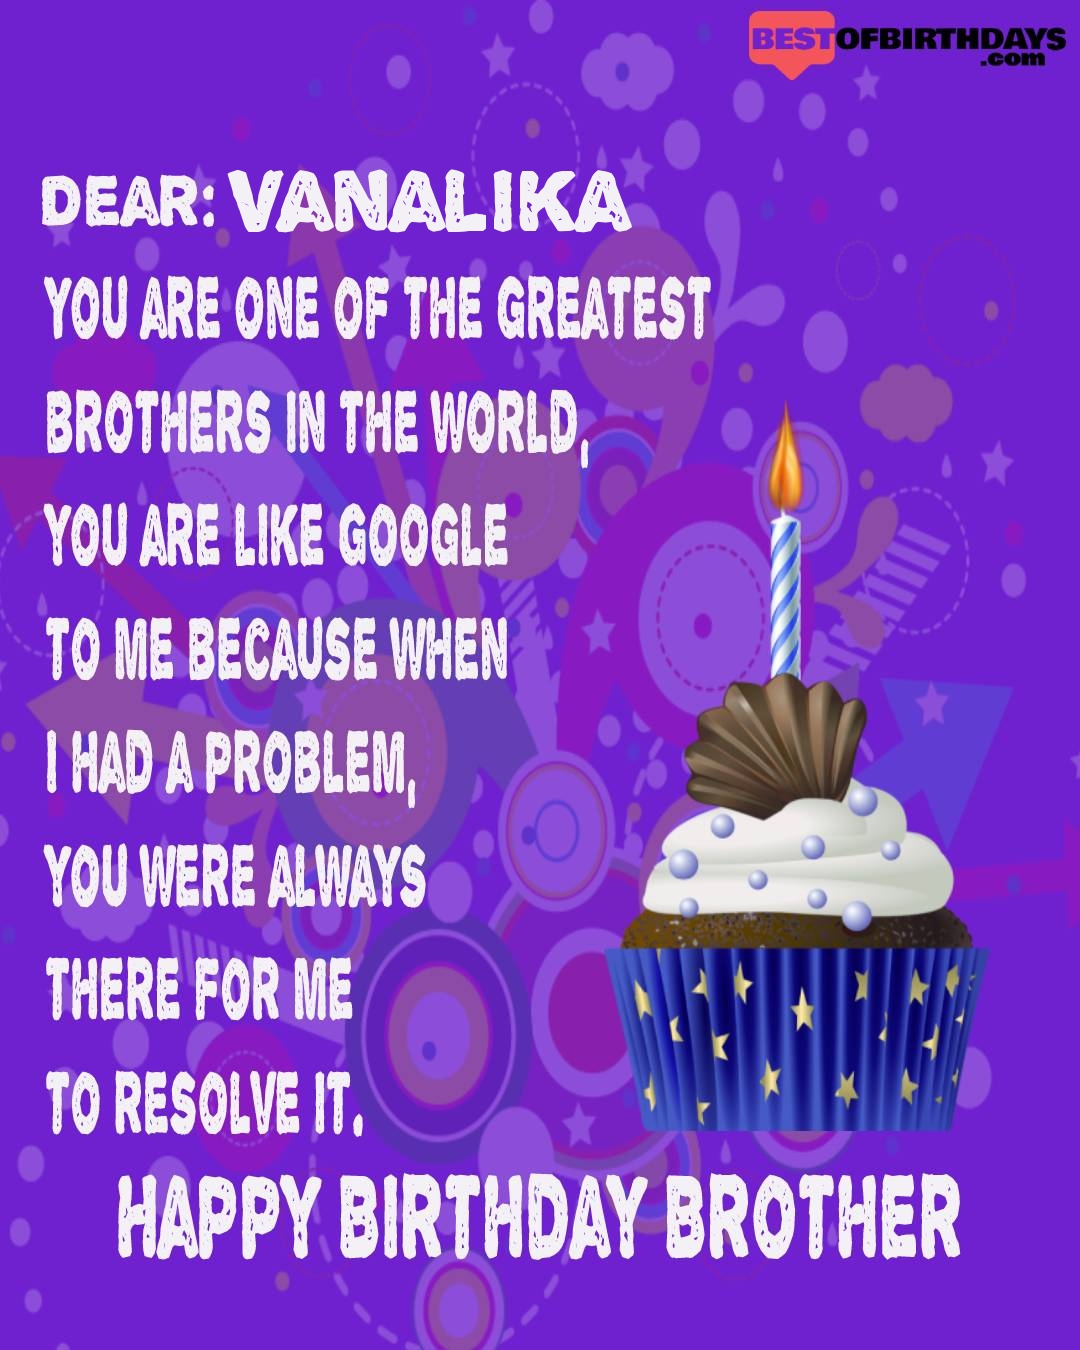 Happy birthday vanalika bhai brother bro